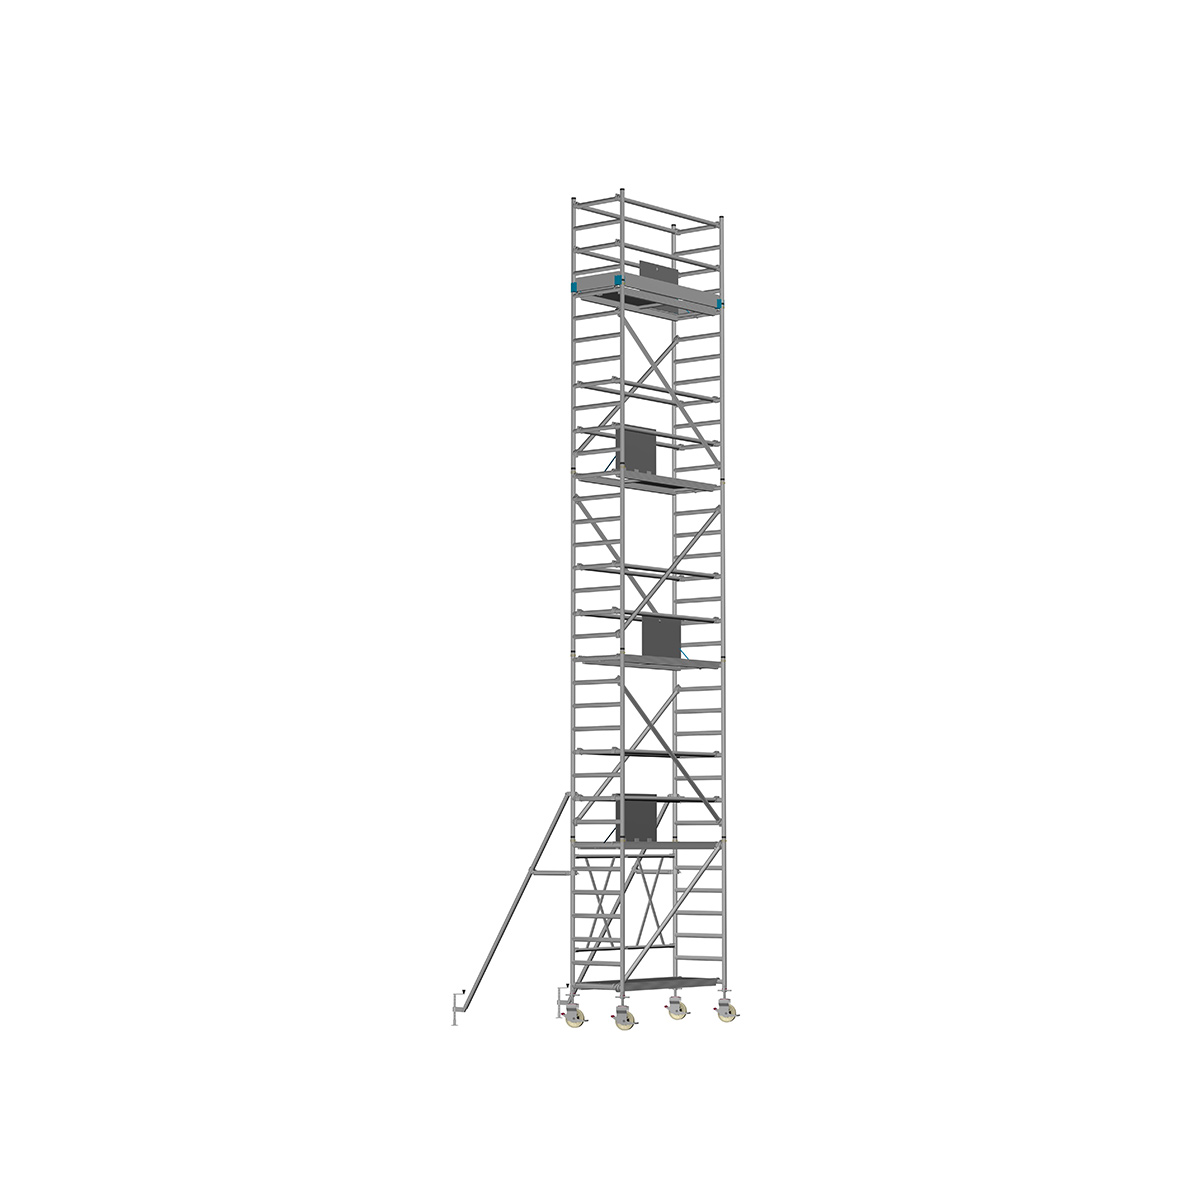 Chiemsee 2 LIGHT - Länge: 2,54 m - Breite: 0,74 m, Standhöhe 0,80 m